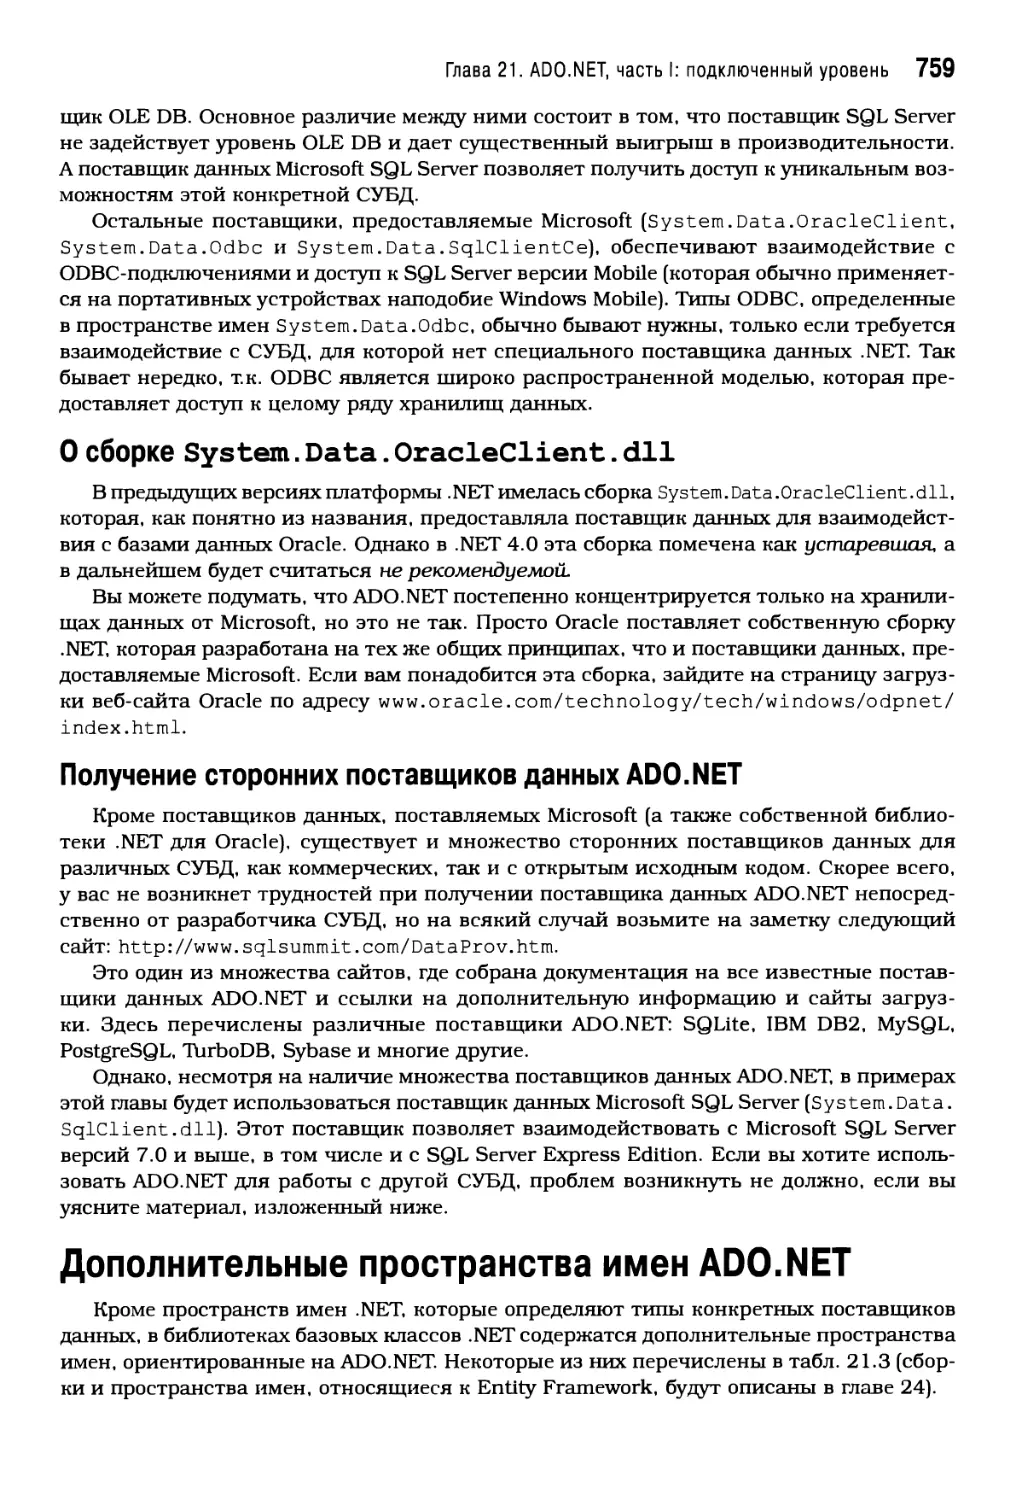 О сборке System.Data.OracleClient.dll
Получение сторонних поставщиков данных ADO.NET
Дополнительные пространства имен ADO.NET